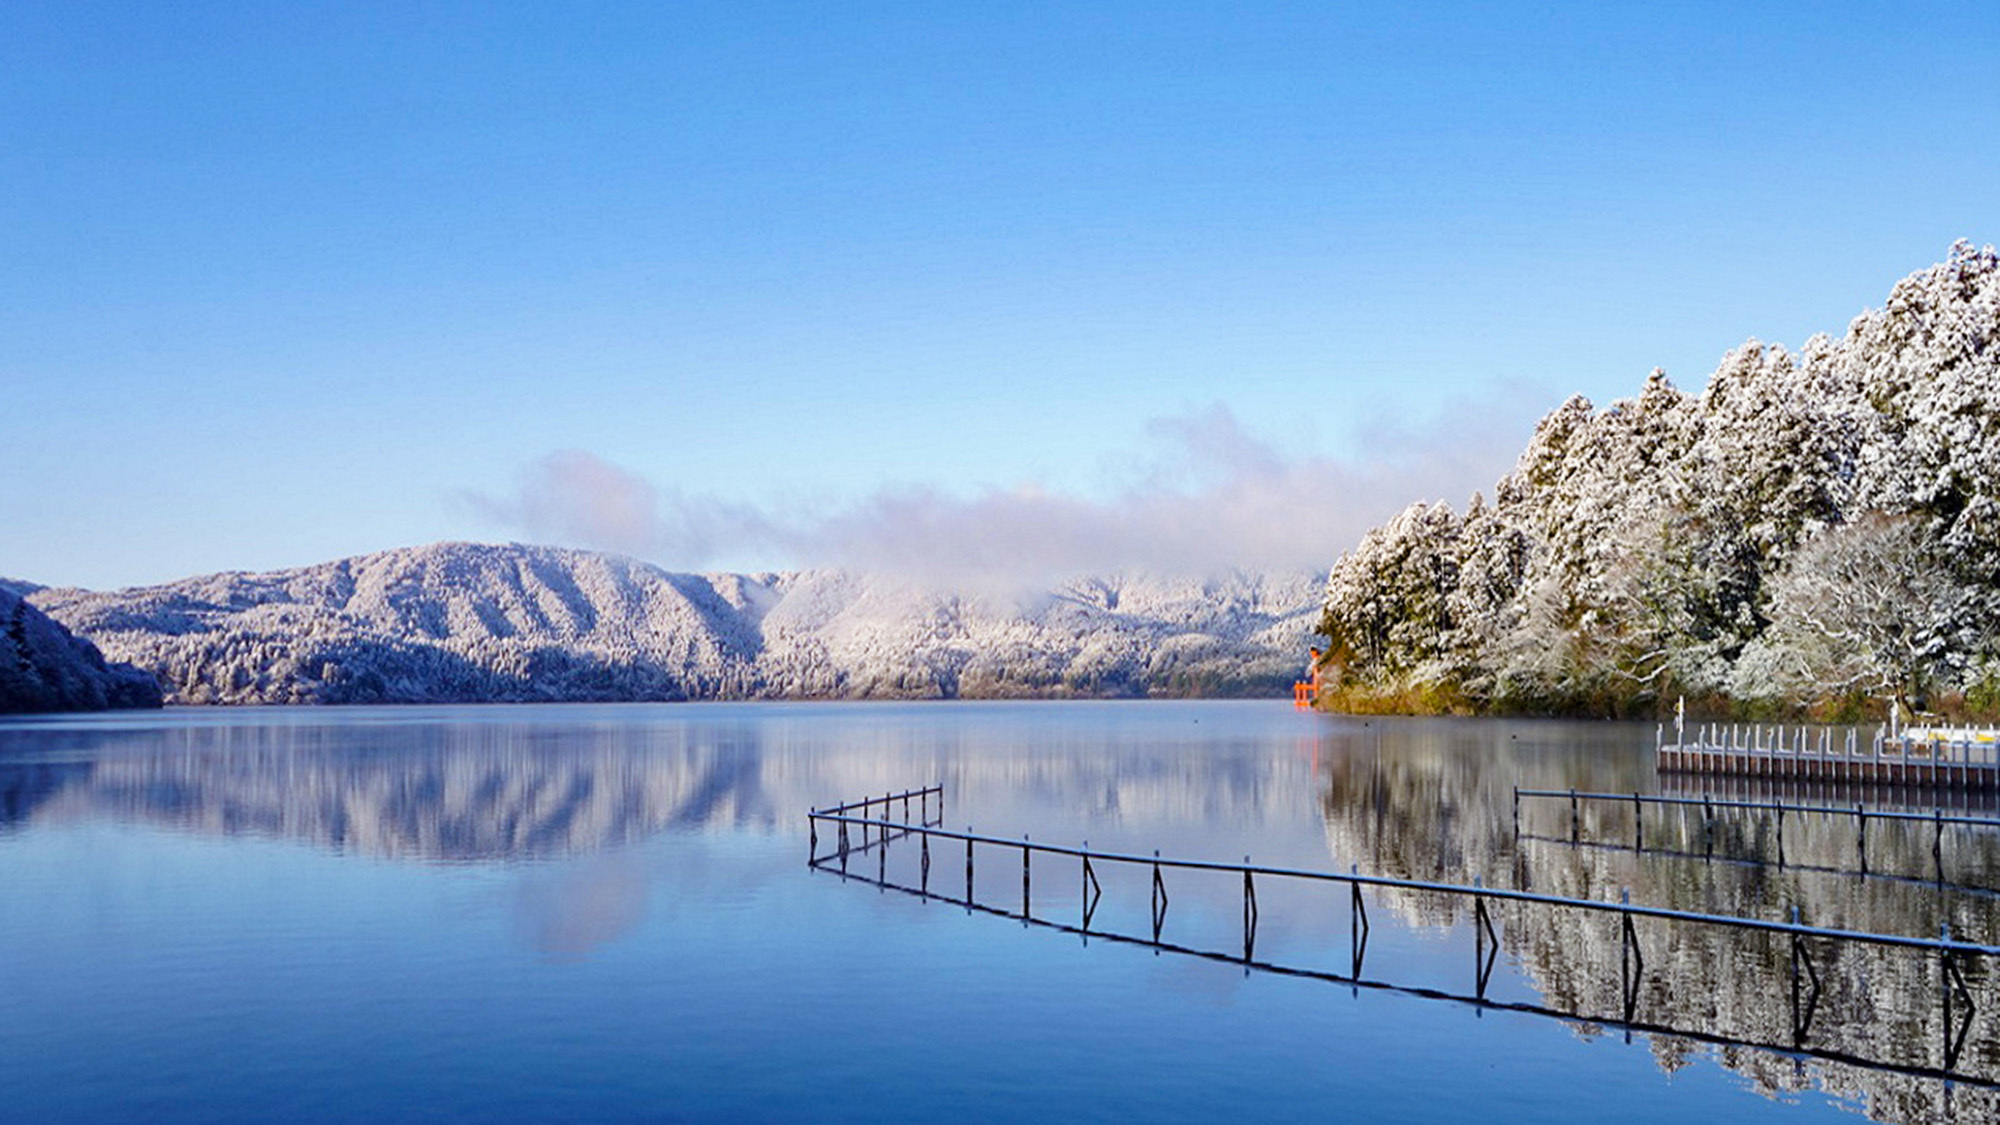 ・穏やかな芦ノ湖は天気がいいと鏡のように青空が映ります